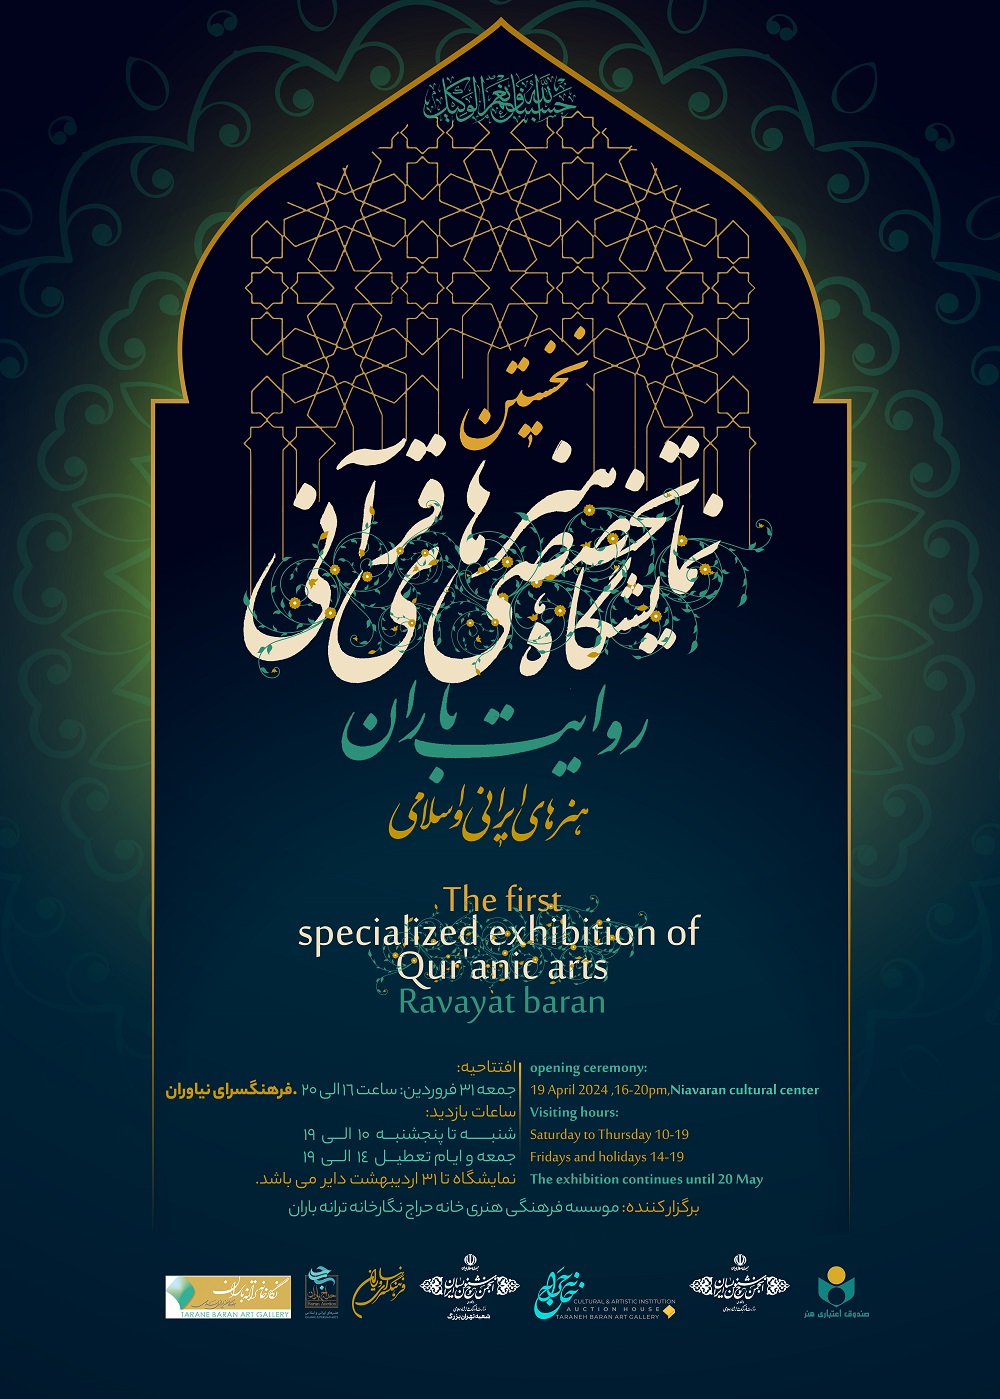 نمایشگاه تخصصی هنرهای قرآنی، «روایت باران» برگزار می شود/ دفاع از ساحت قرآن کریم با زبان هنر

